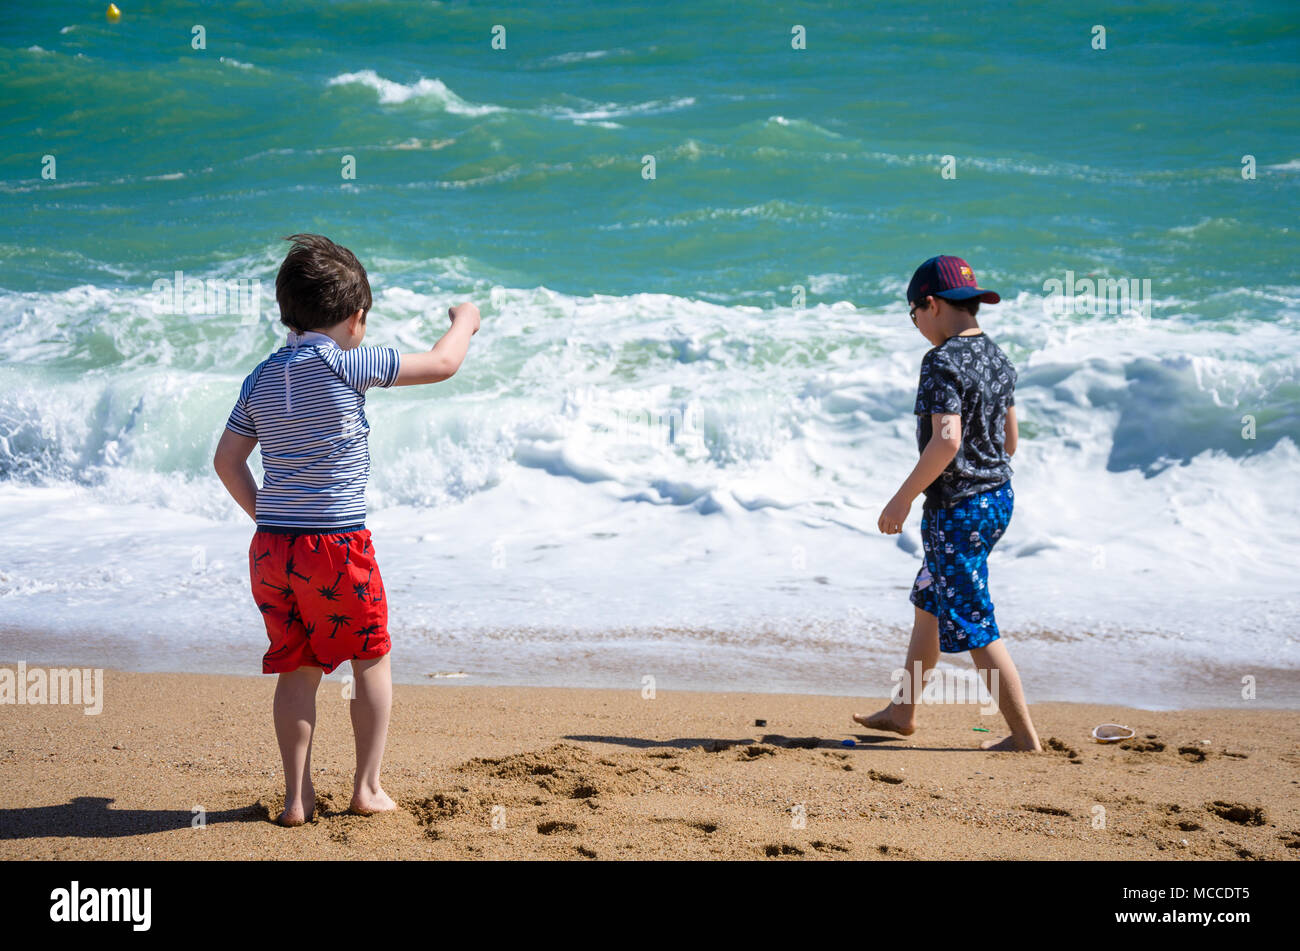 Zwei junge Brüder spielen gemeinsam an einem Sandstrand in der Nähe des Wasser. Stockfoto